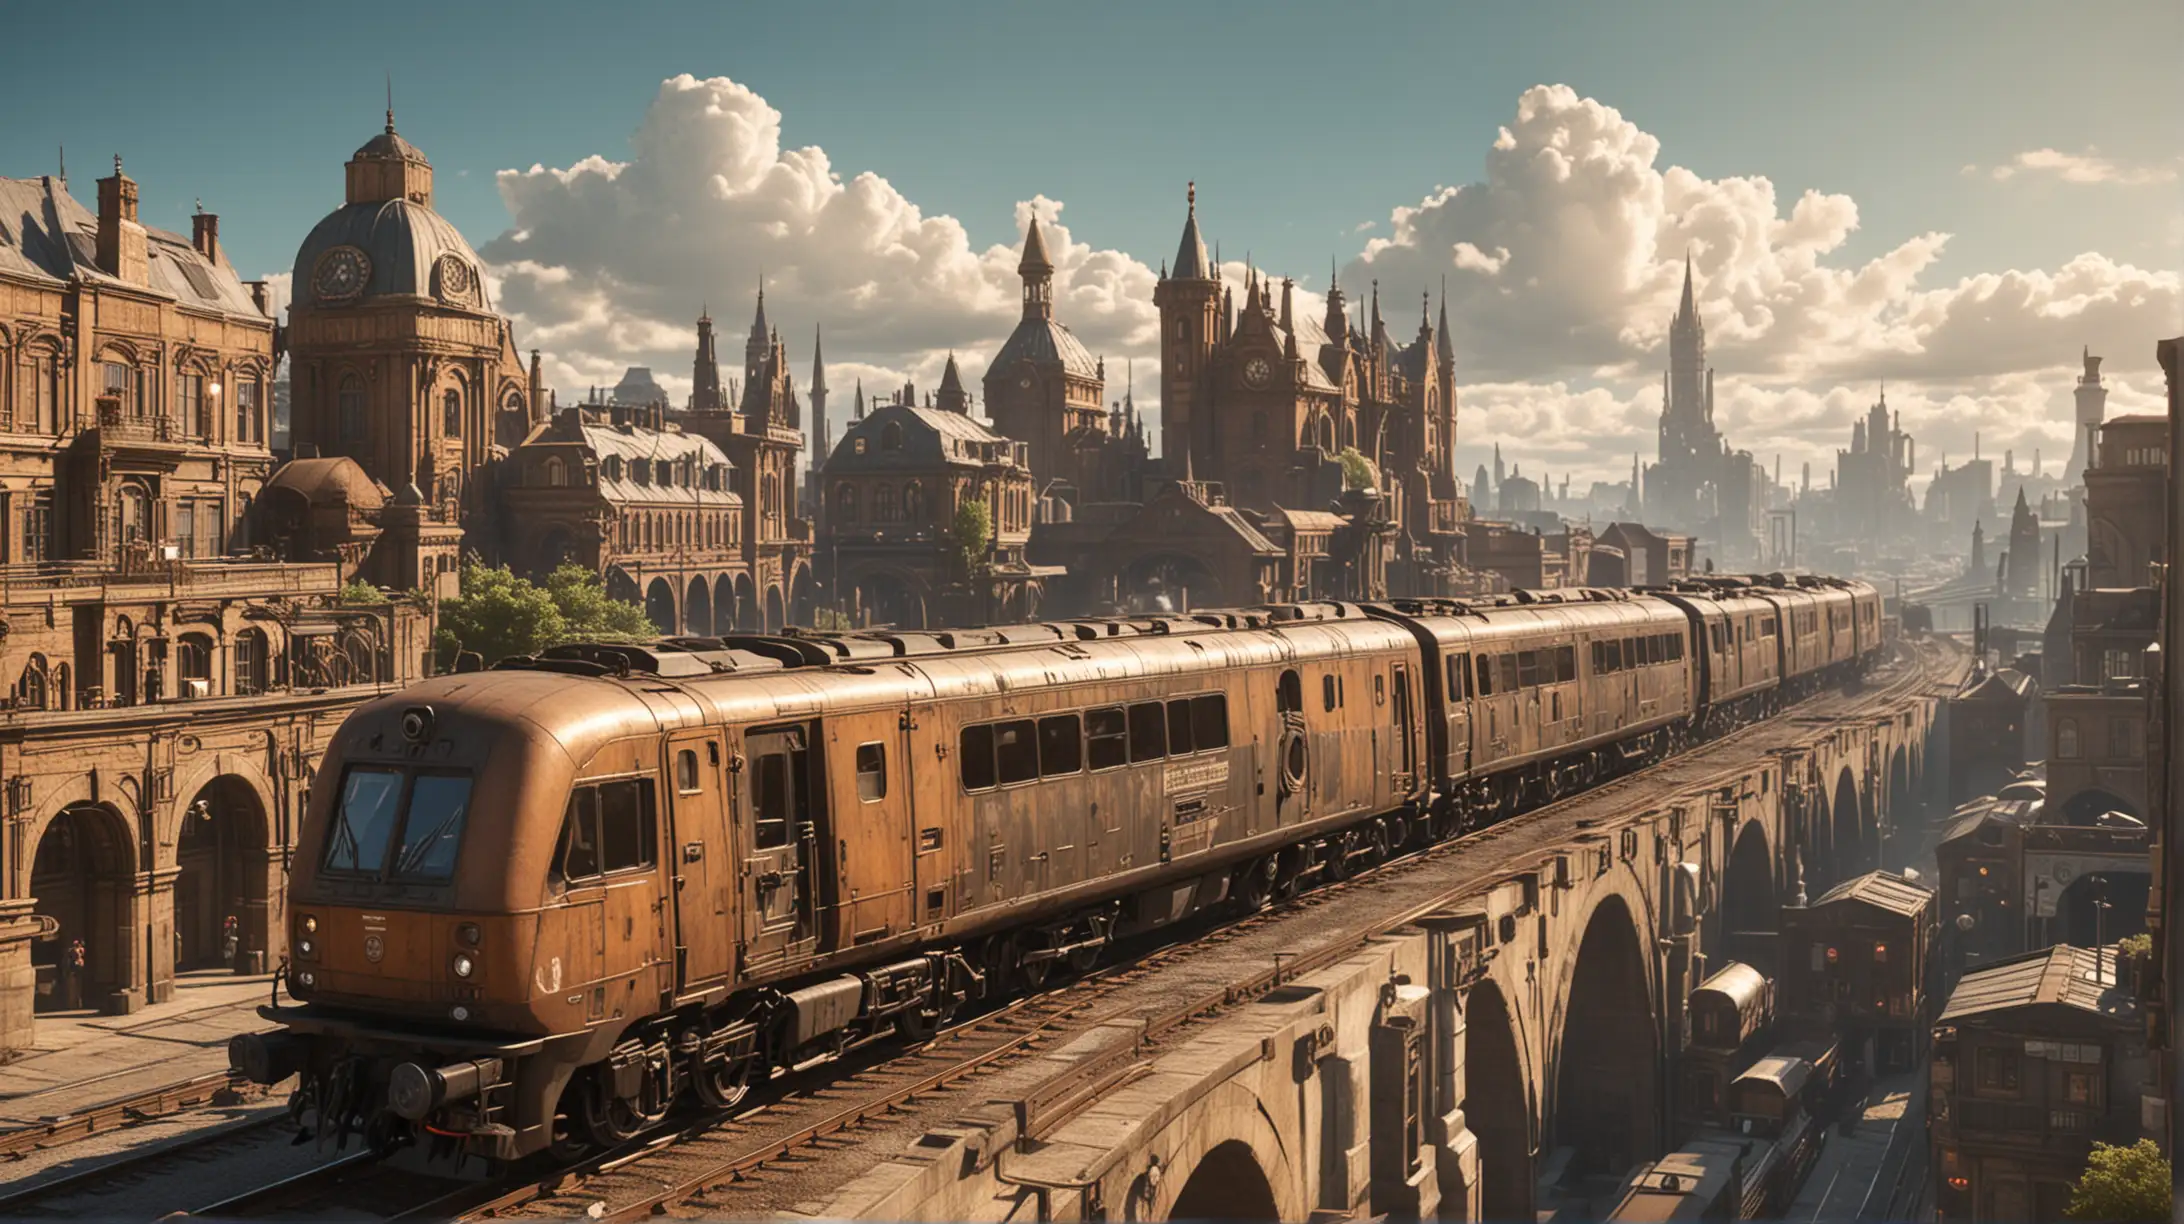 Superfast Diesel Train Speeds Through Steampunk Metropolis Under Sunny Skies